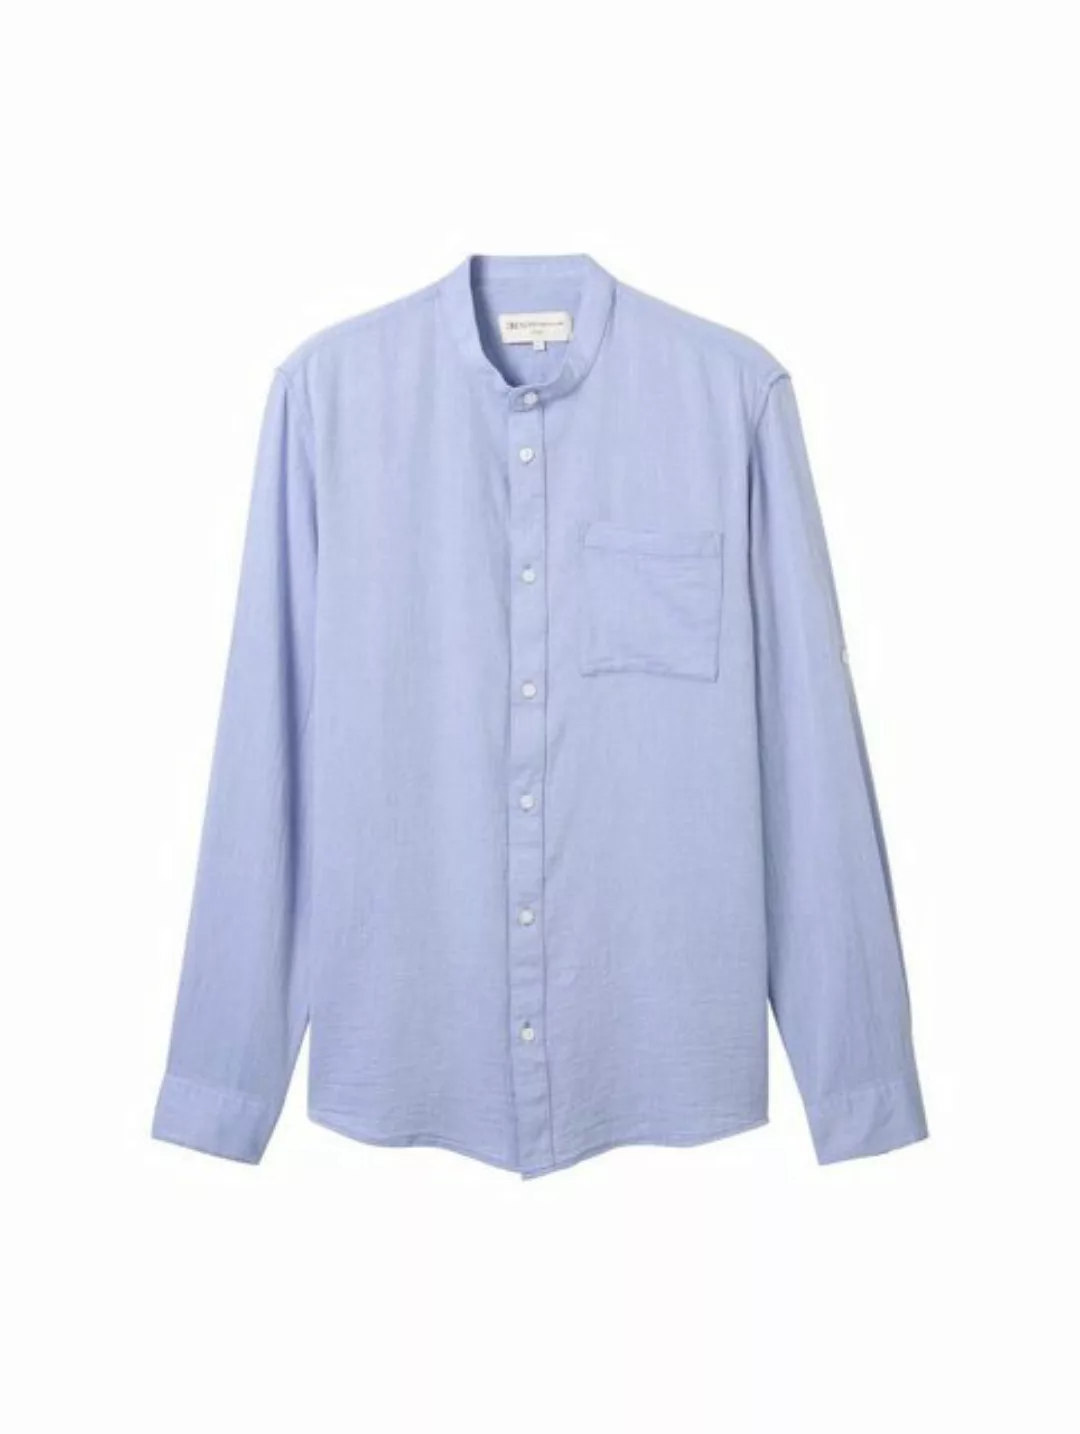 TOM TAILOR Denim T-Shirt fitted structured shirt, blue white squared struct günstig online kaufen